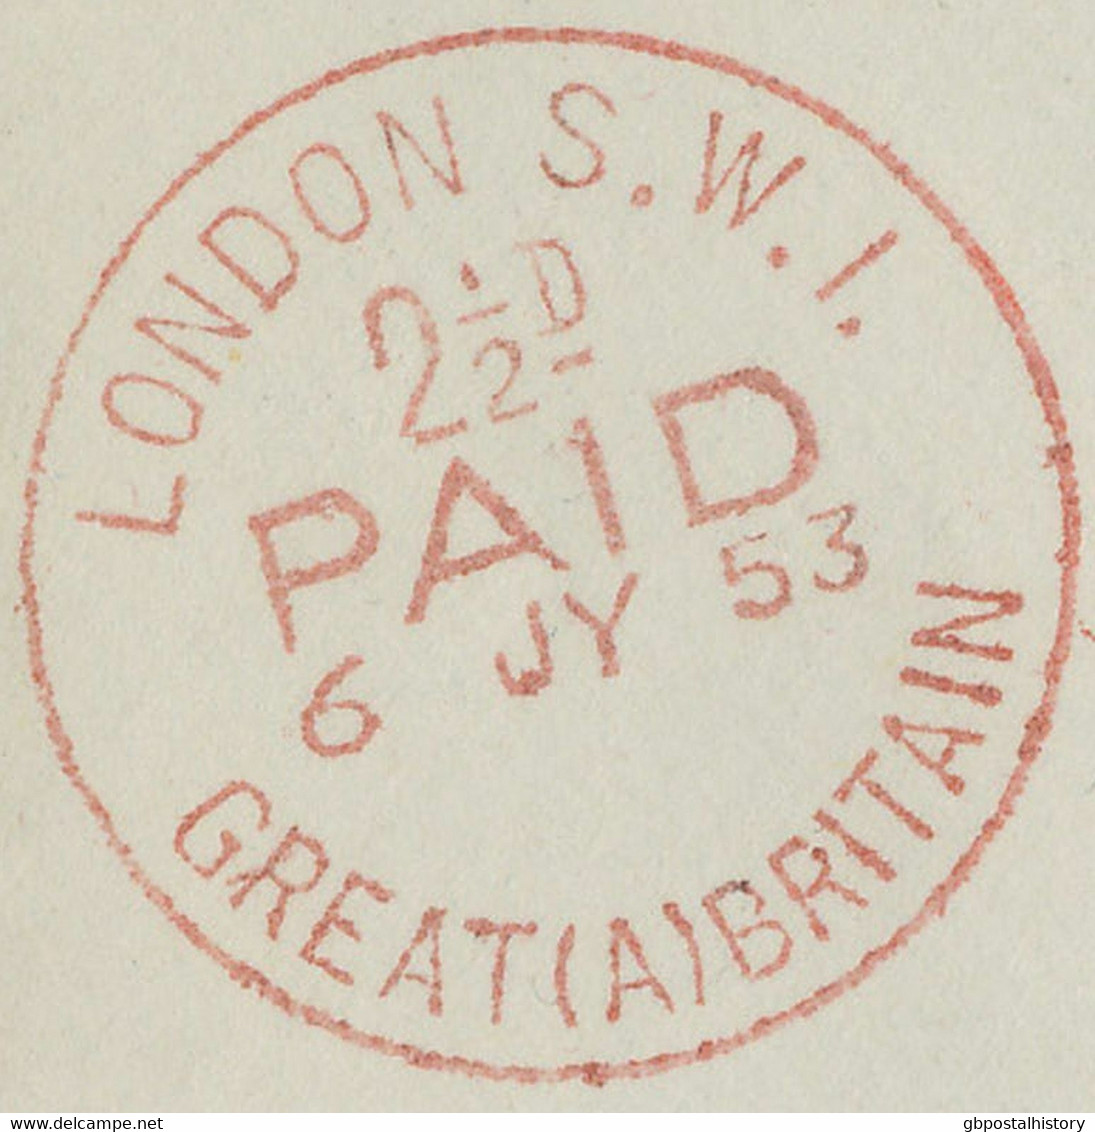 GB "LONDON S.W.I. / 2 1/2 D. / PAID / 6 JY 53 / GREAT (A) BRITAIN" Roter CDS Cvr - Dienstzegels